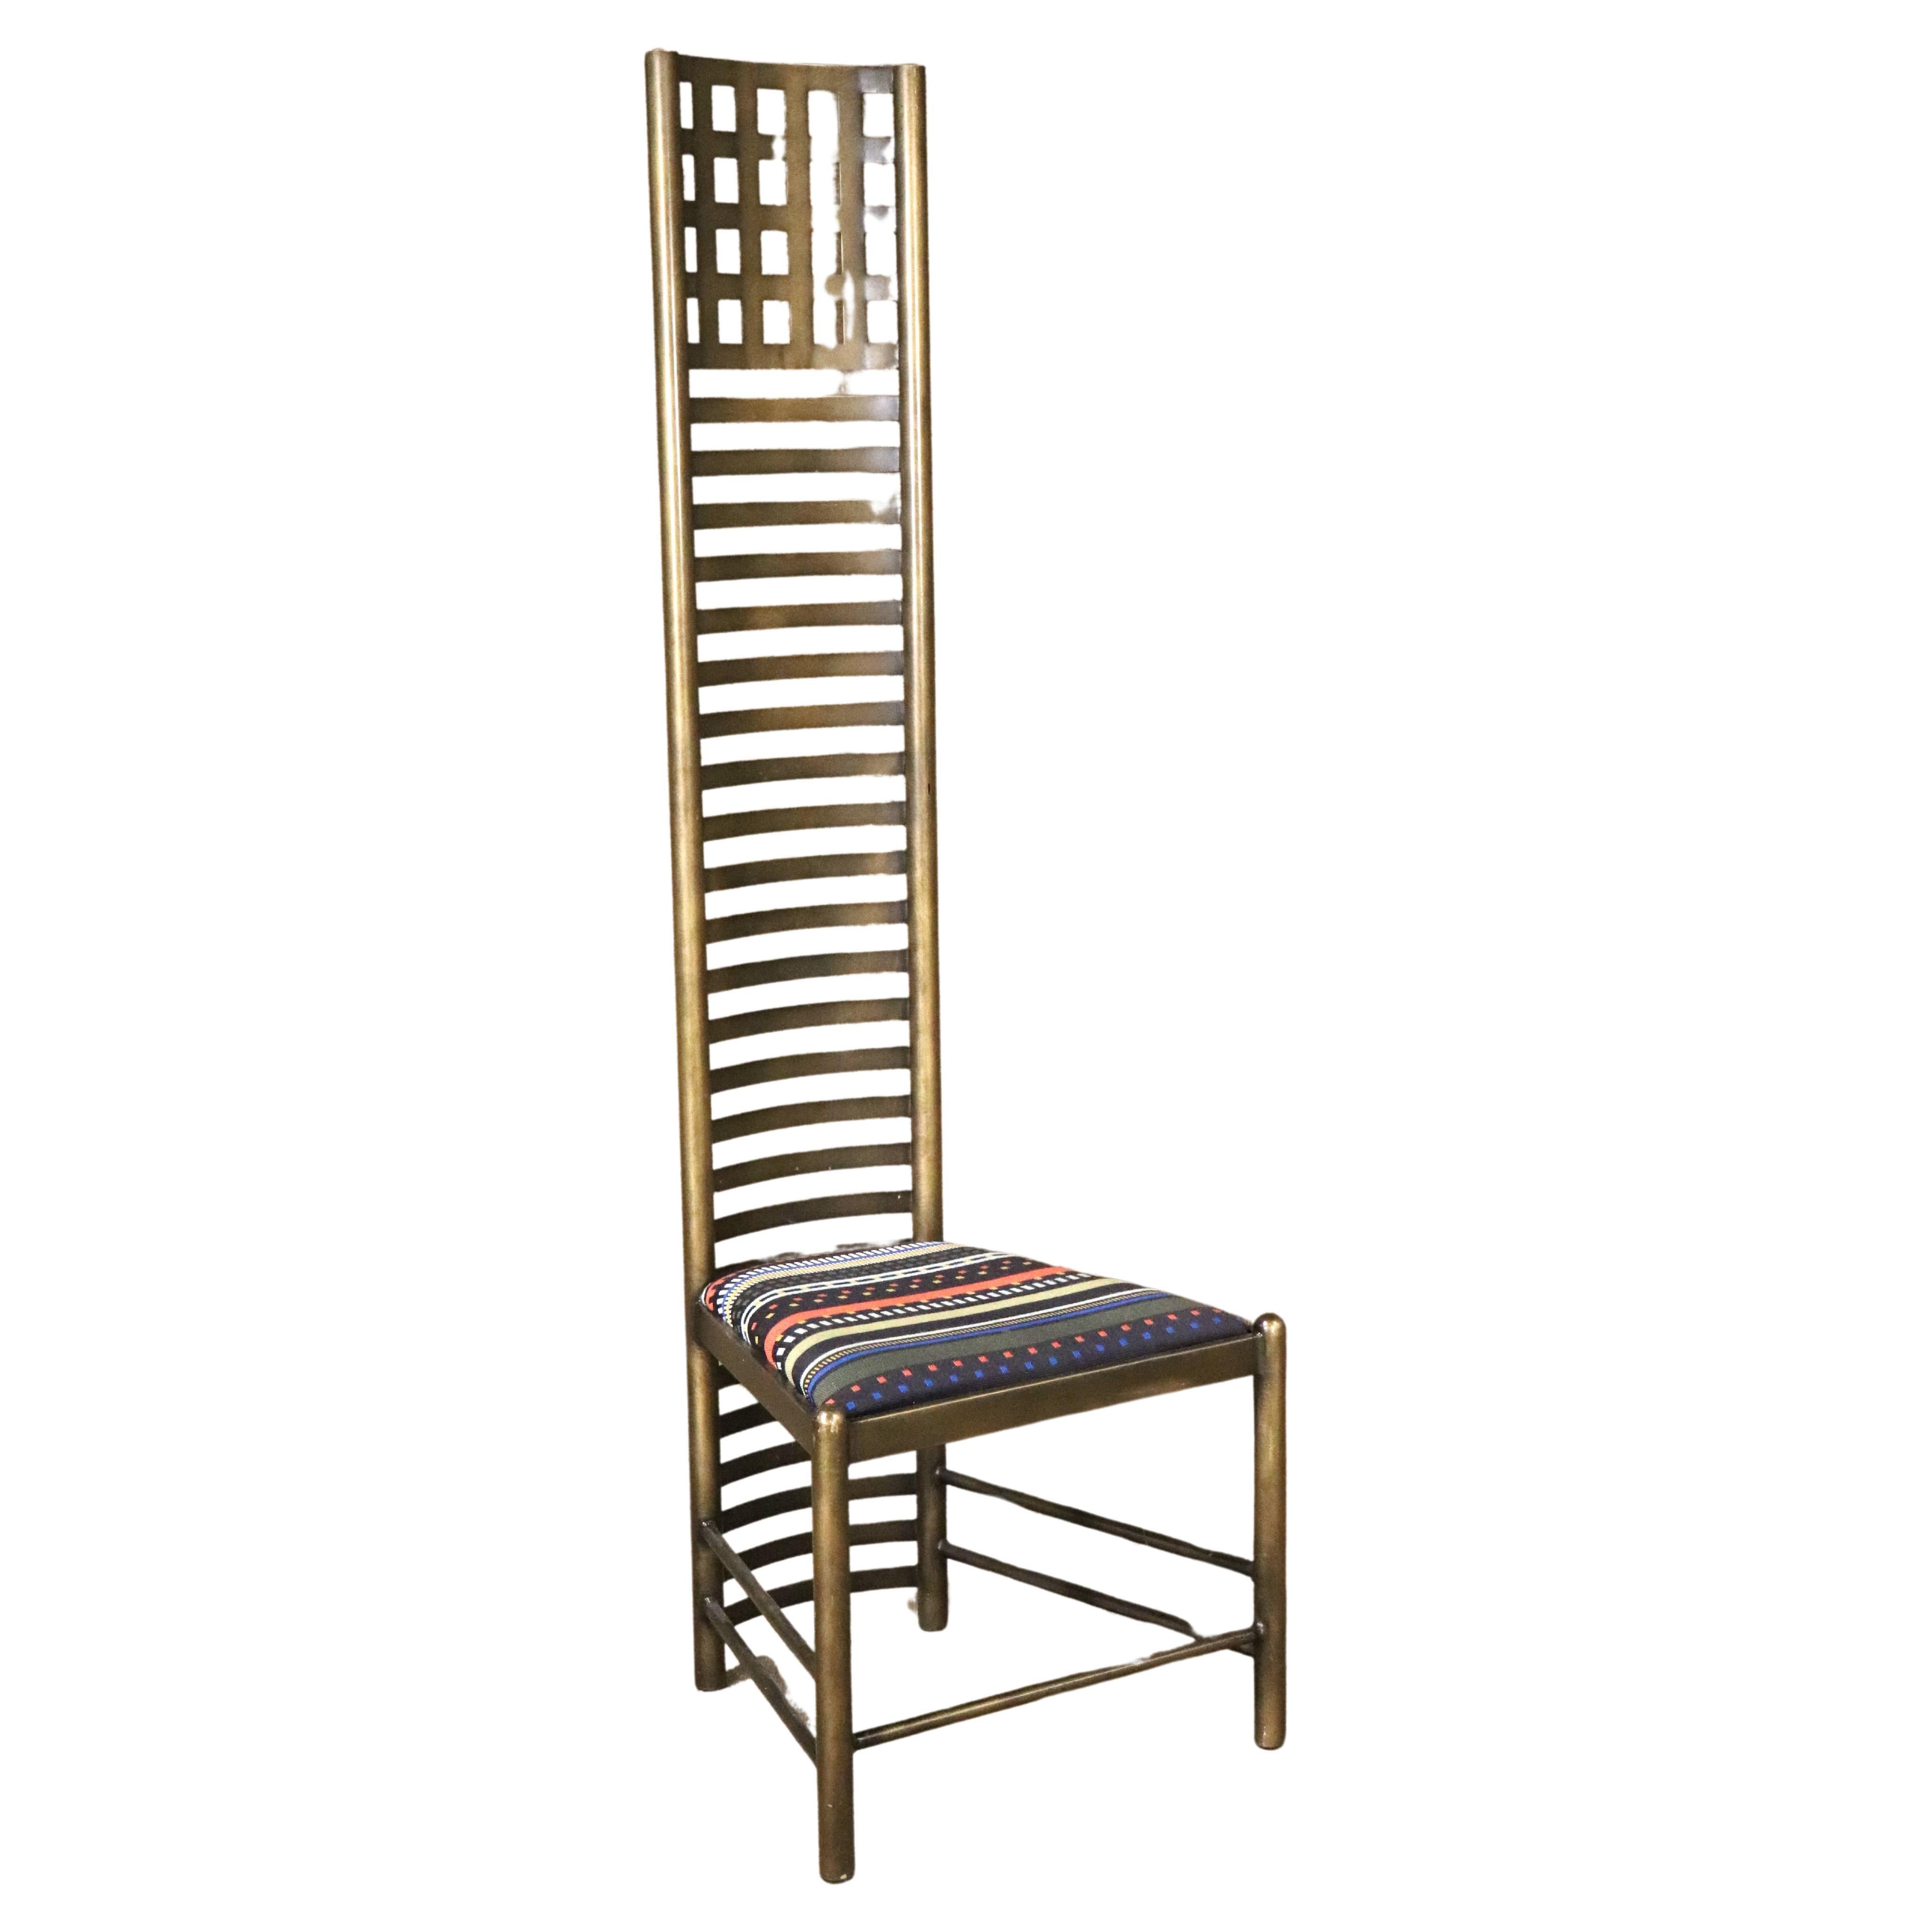 Charles Rennie Mackintosh, entworfener Stuhl von Cassina